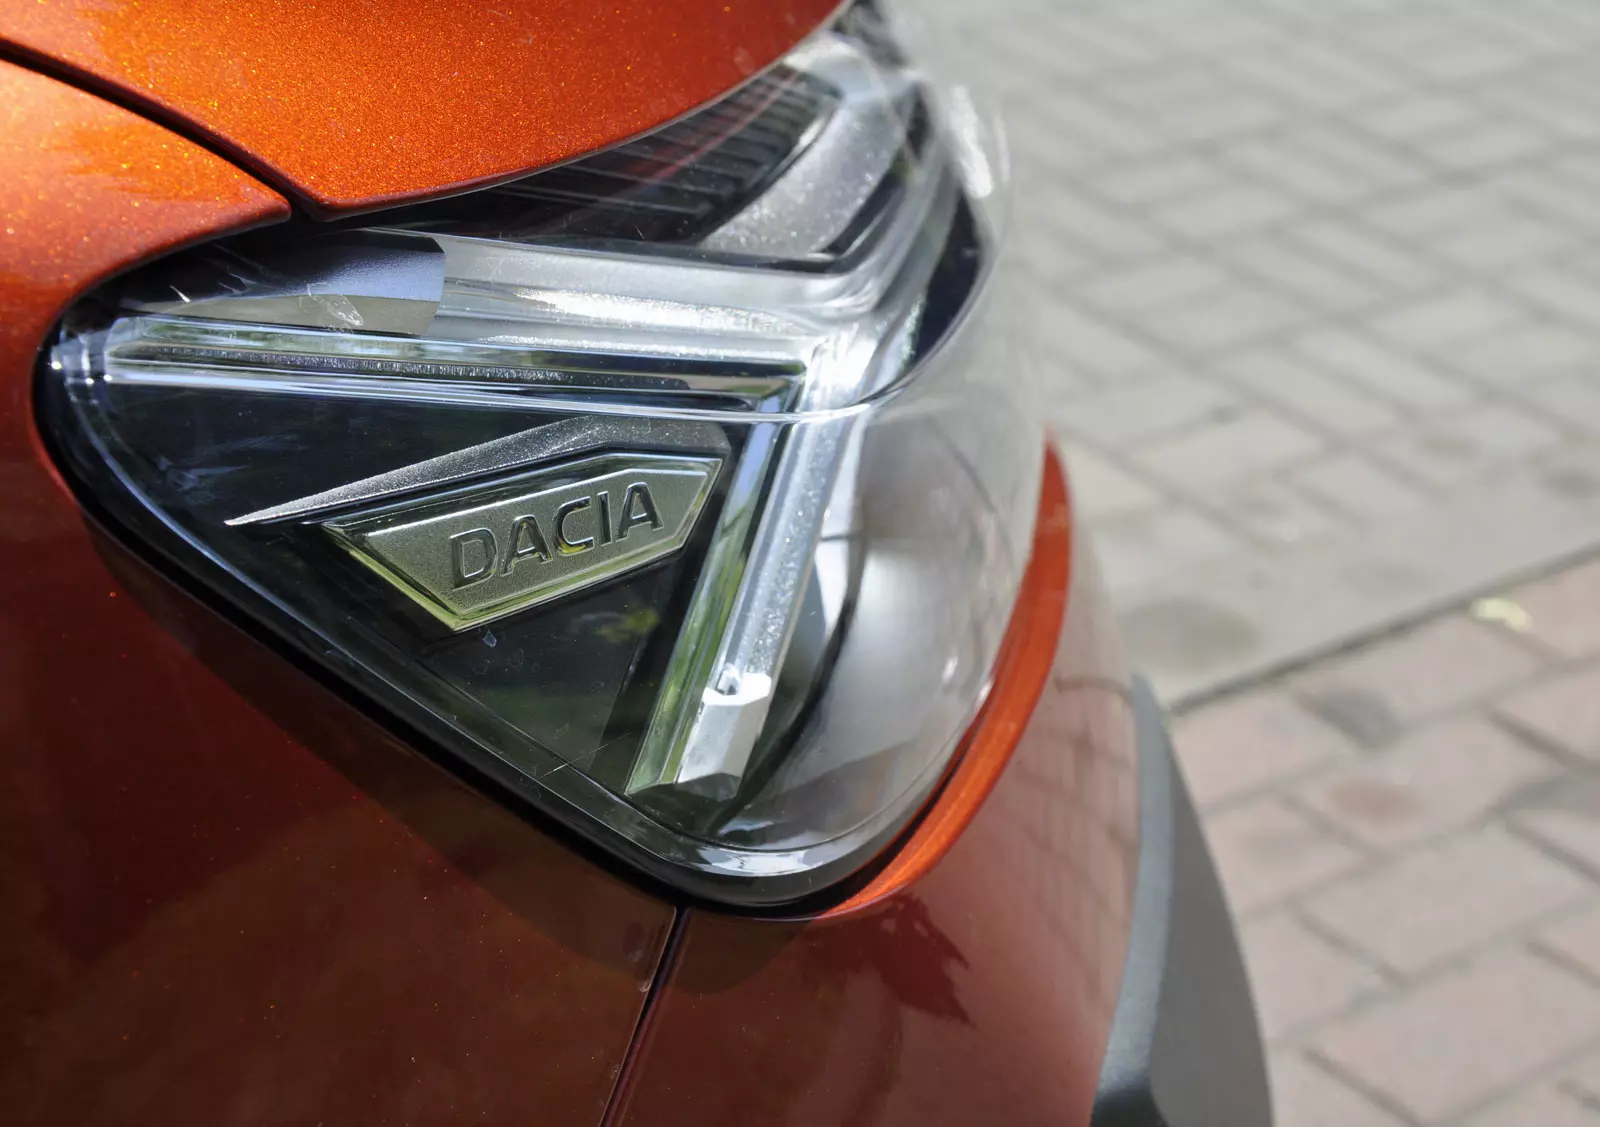 Dacia stawia na samochody LPG